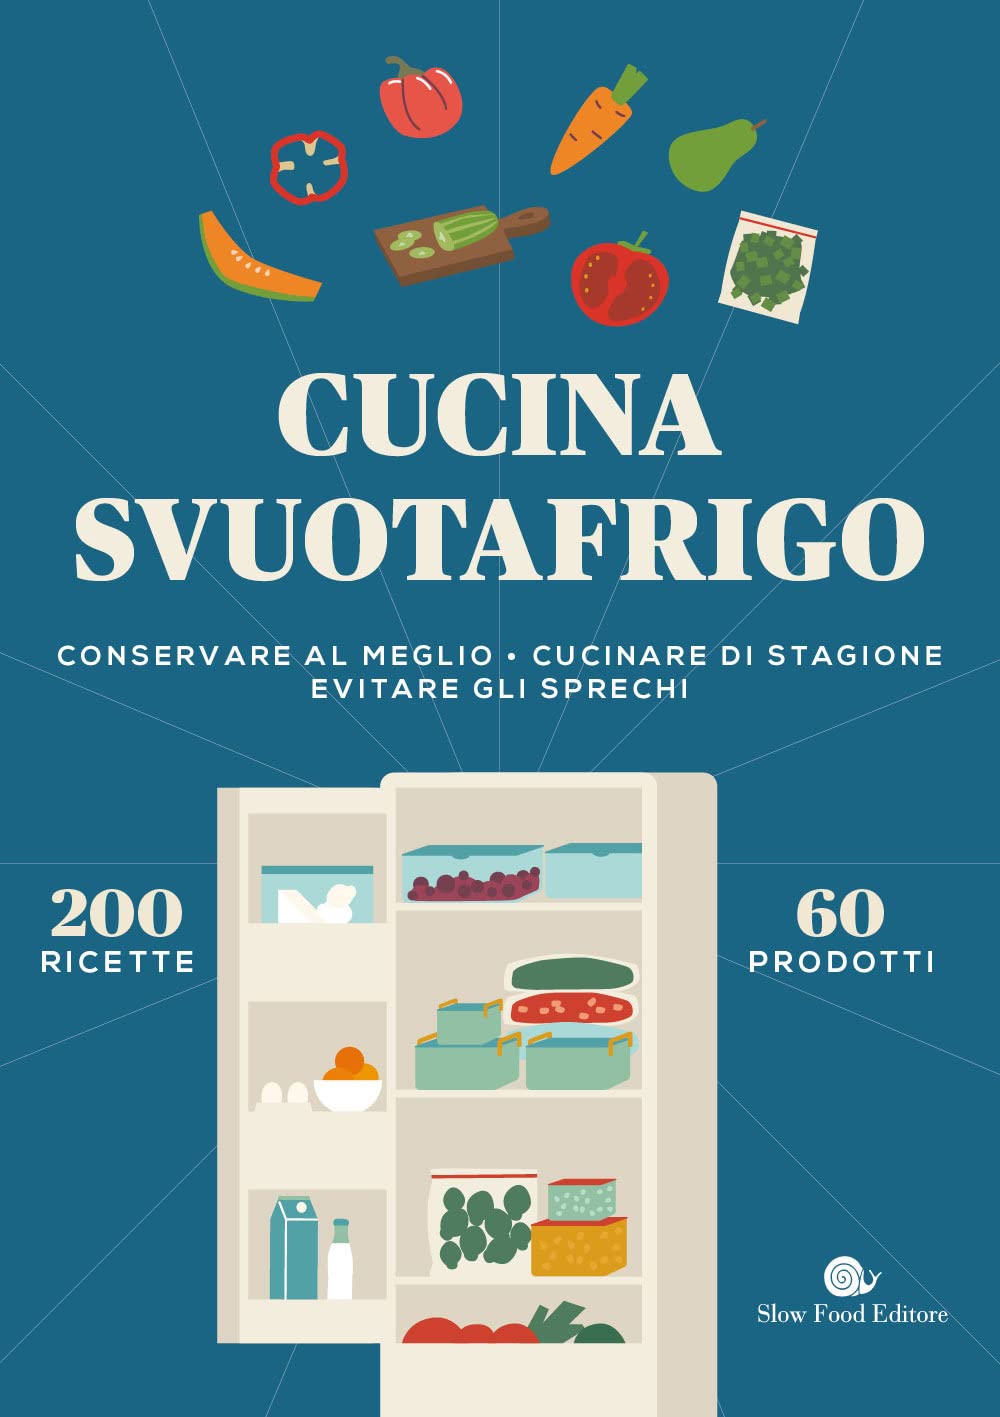 Cucina Svuotafrigo di Slow Food Editore – Recensione